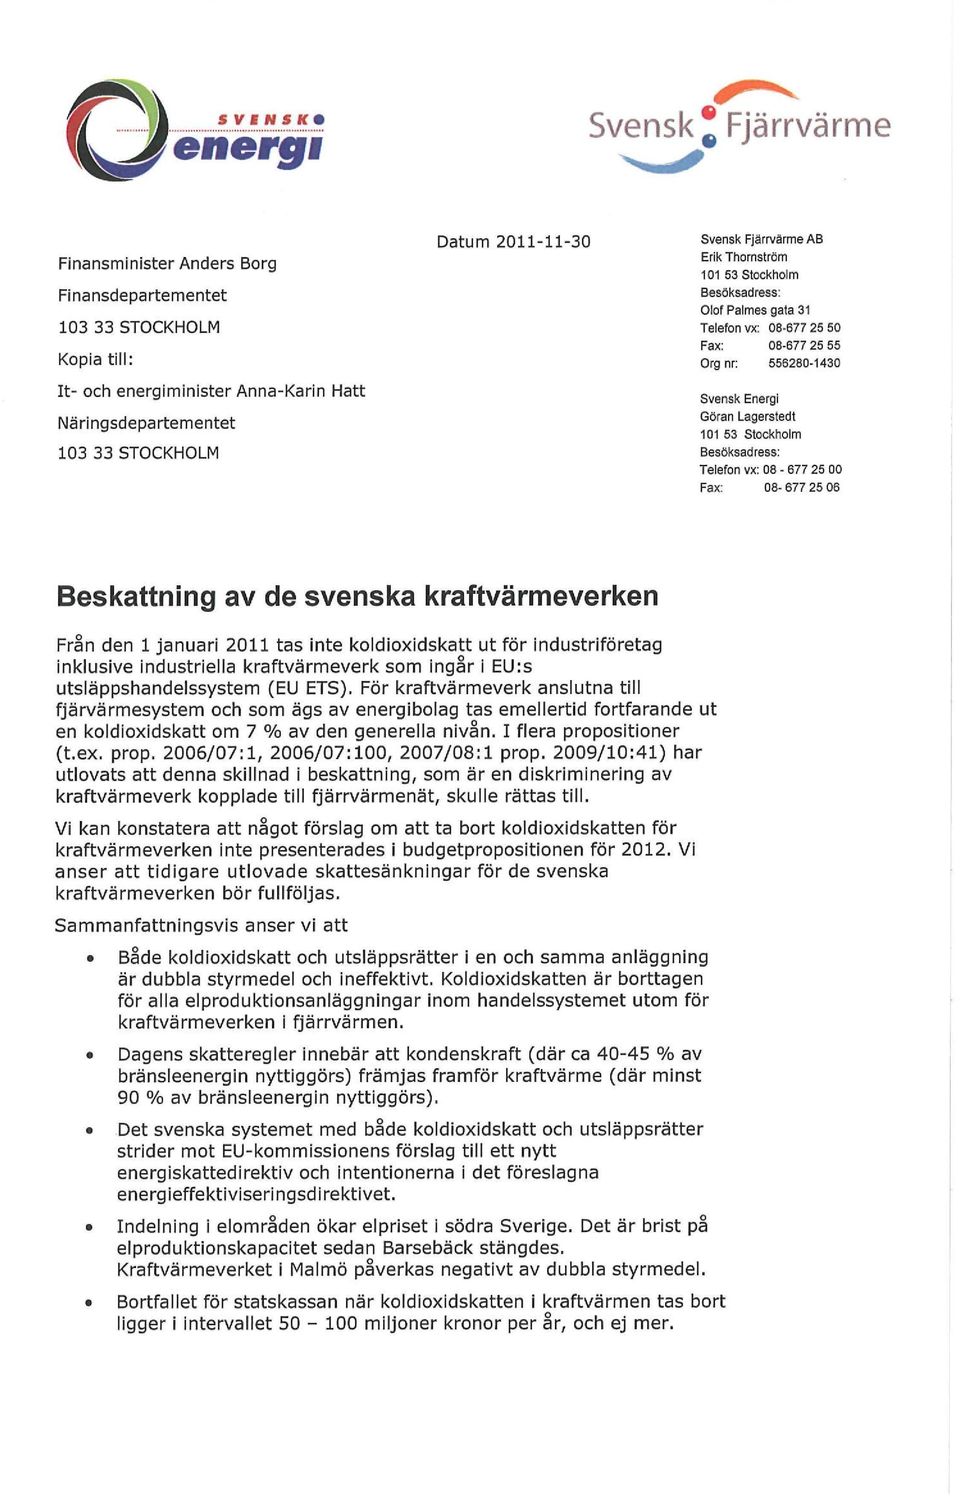 Stockholm Besöksadress: Telefon vx: 08-677 25 00 Fax: 08-677 25 06 Beskattning av de svenska kraftvärmeverken Från den 1 januari 2011 tas inte koldioxidskatt ut för industriföretag inklusive